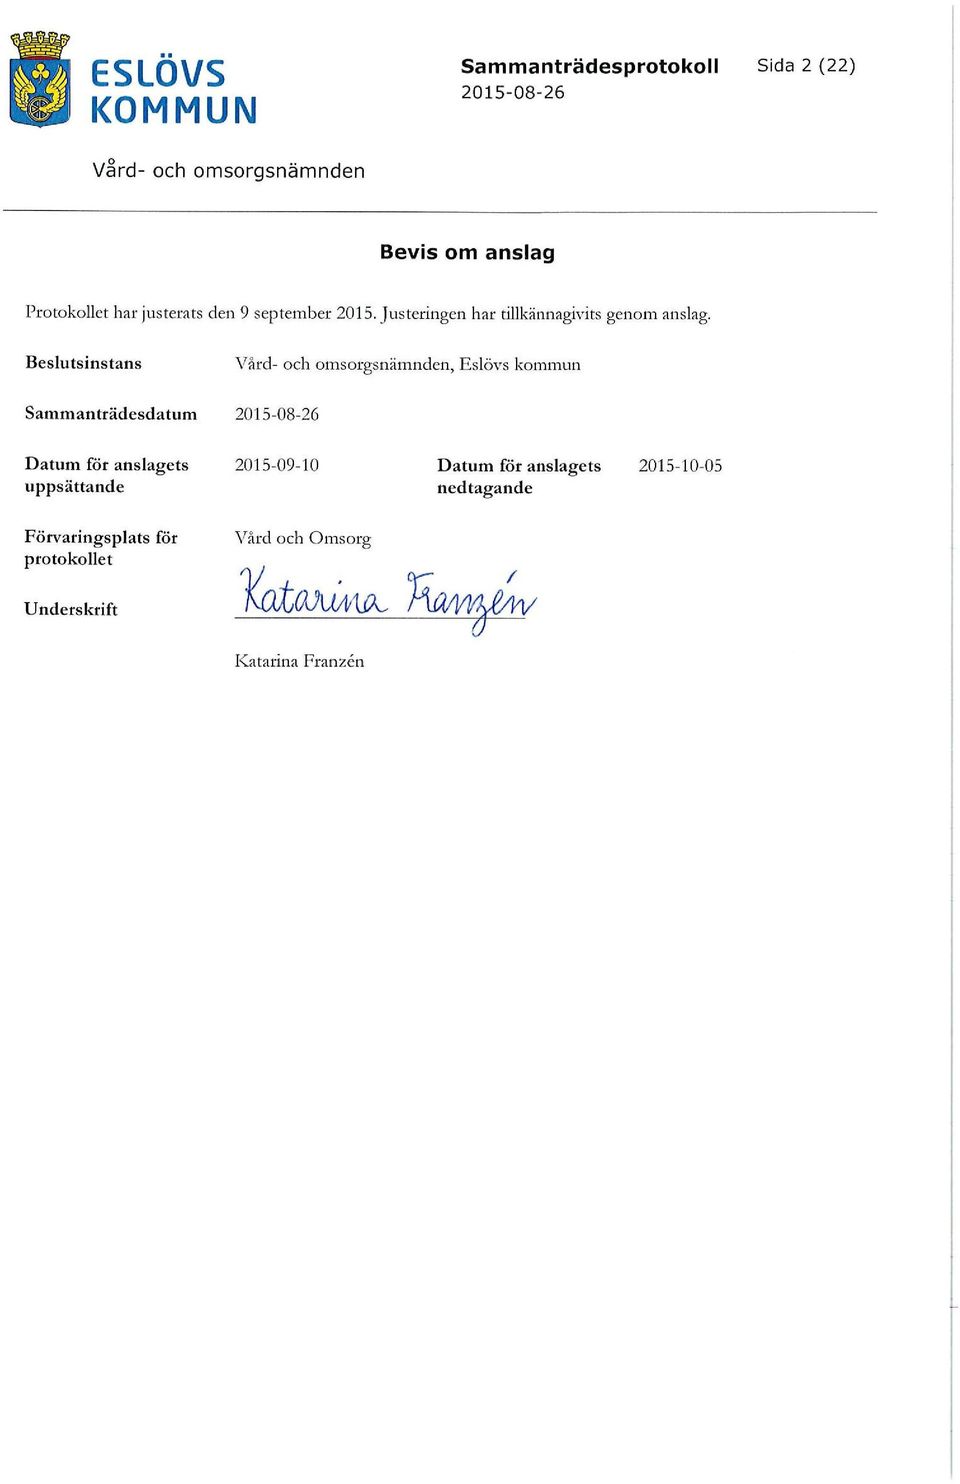 Beslutsinstans Vard- och omsorgsnämnden, Eslövs kommun Sammanträdesdatum 2015-08-26 Datum för anslagets